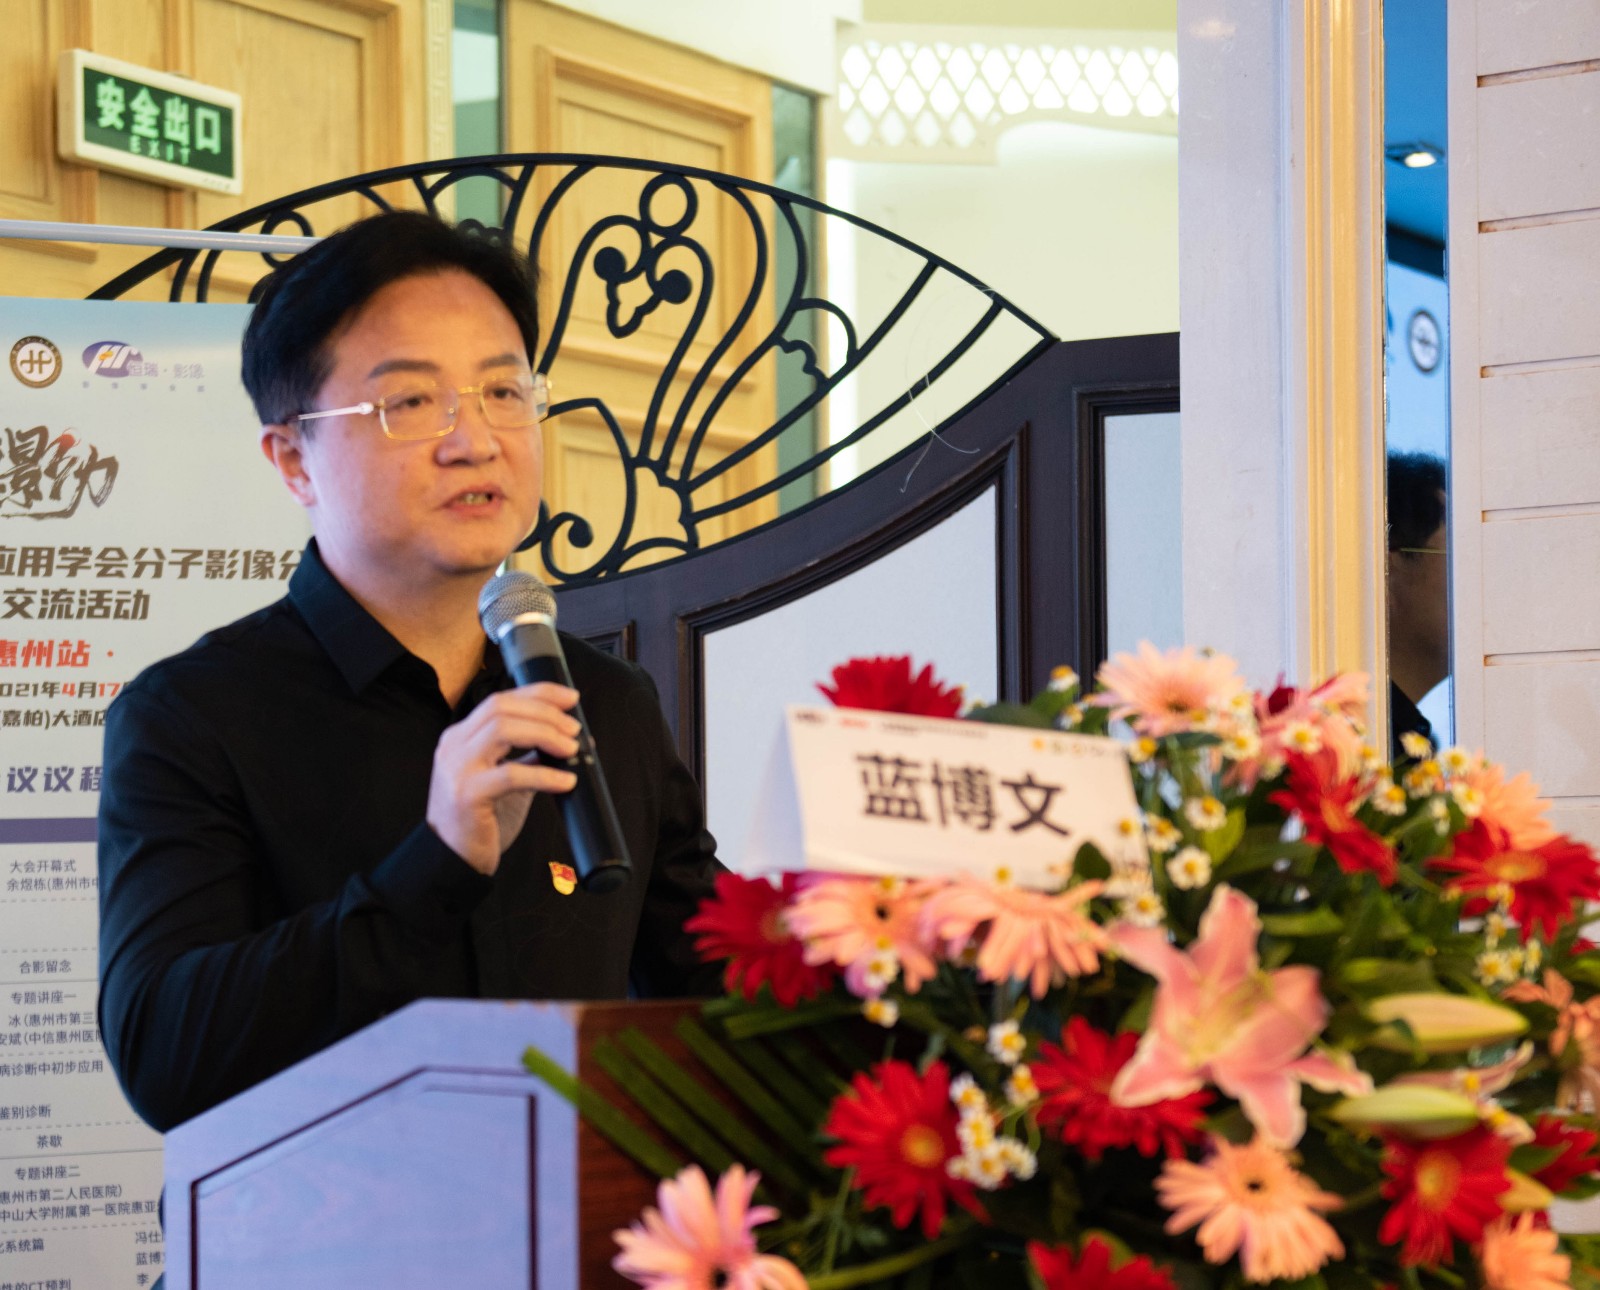 惠州市中心人民医院影像科党支部书记、主任蓝博文教授致辞